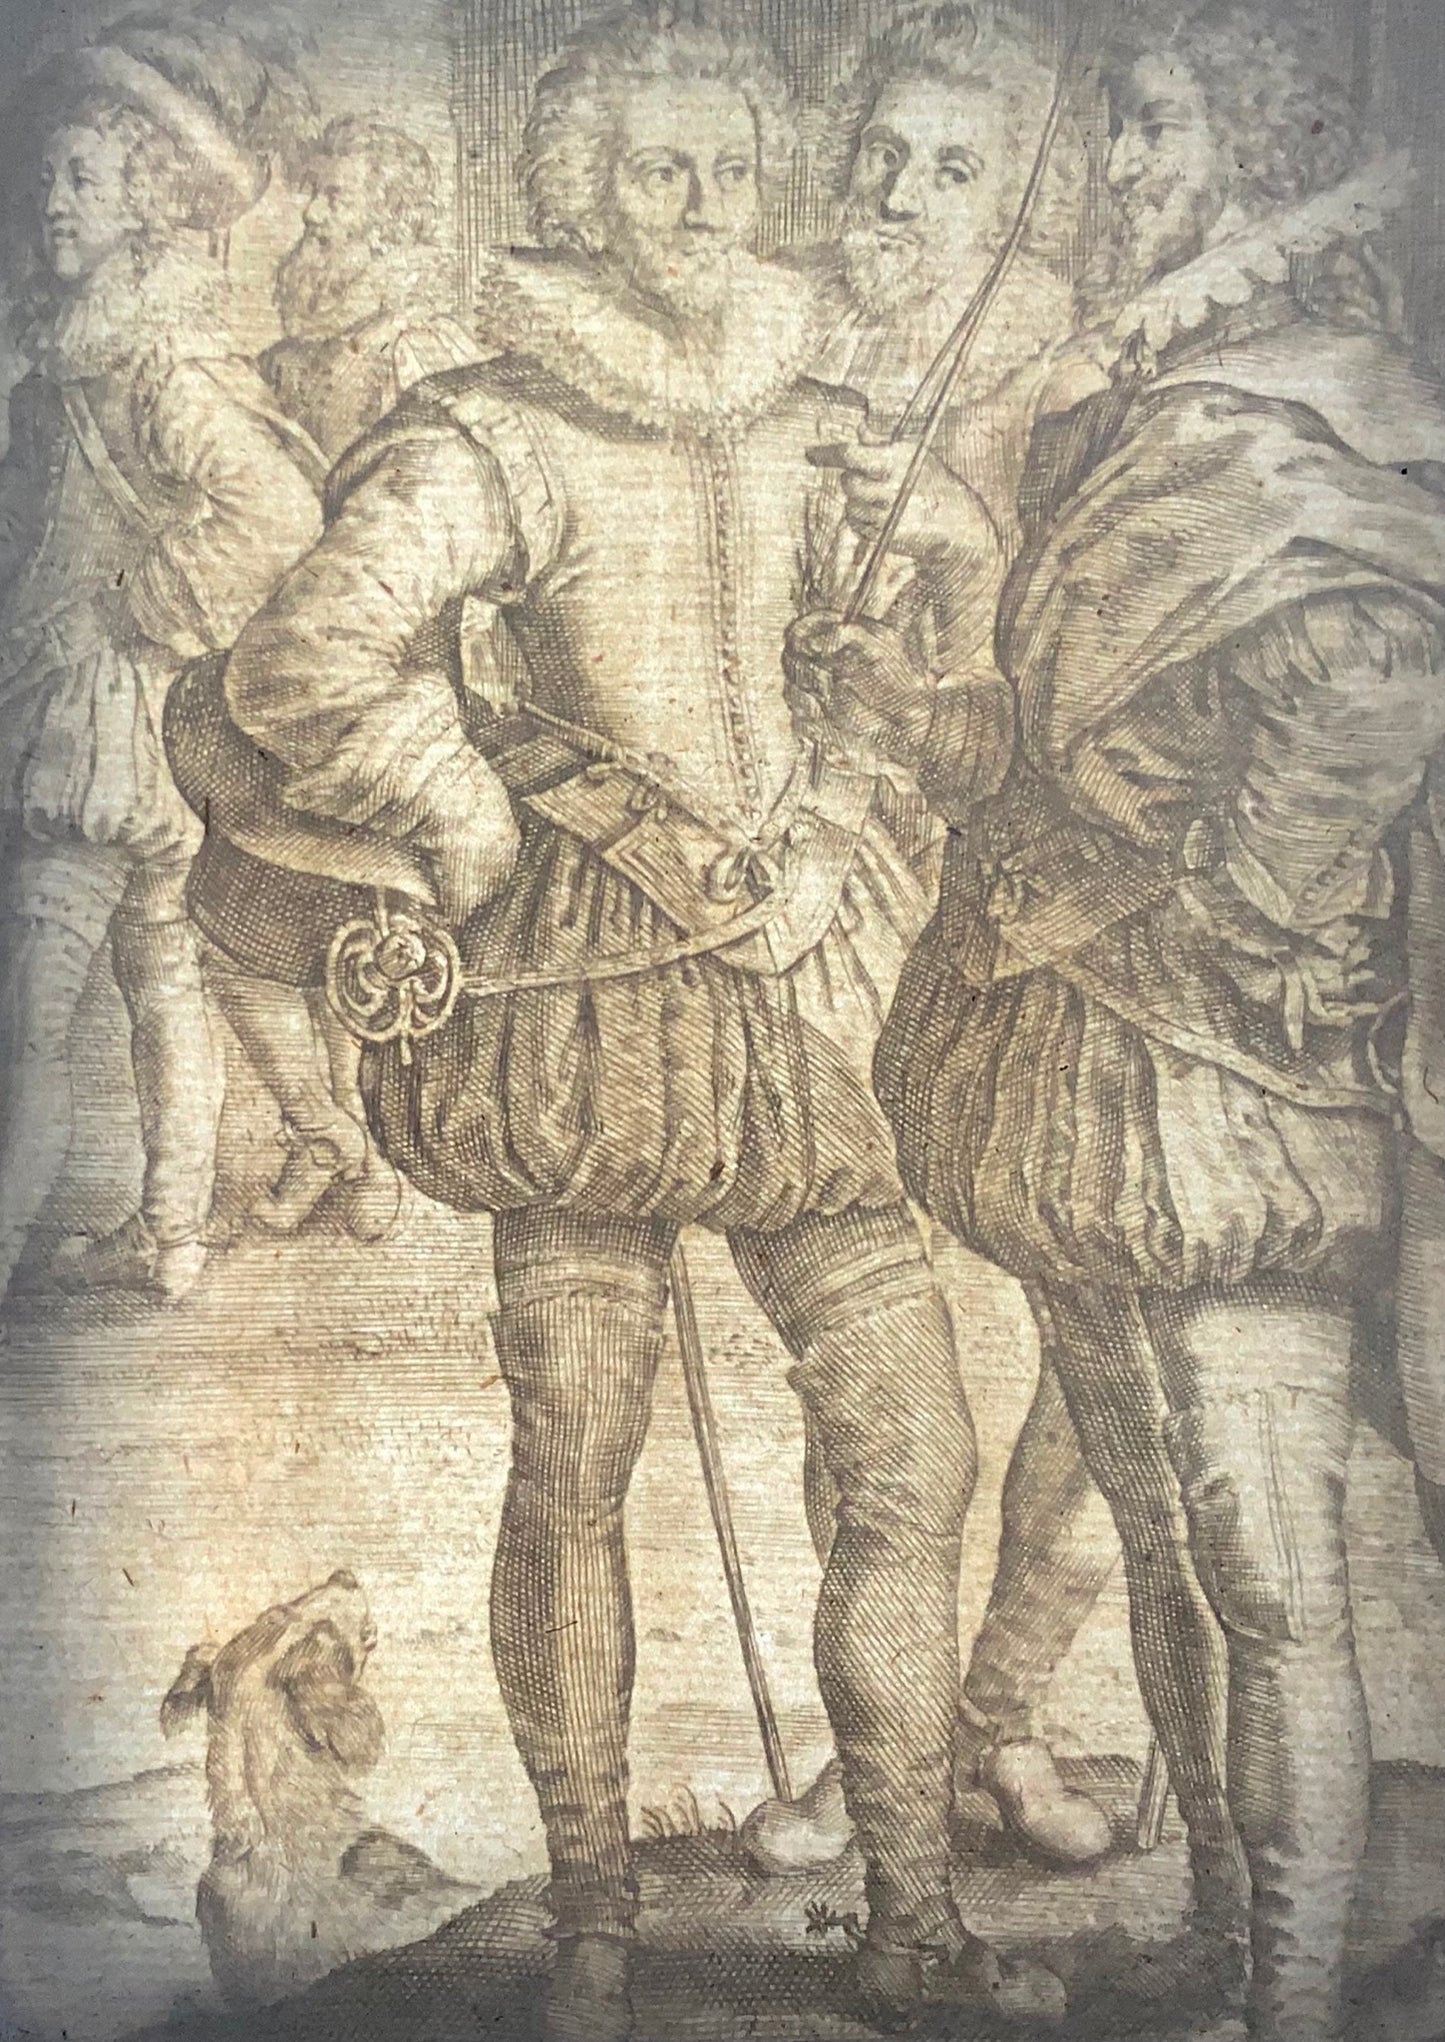 1668 Crispijn de Passe II, équitation, équitation, dressage, équitation, sport